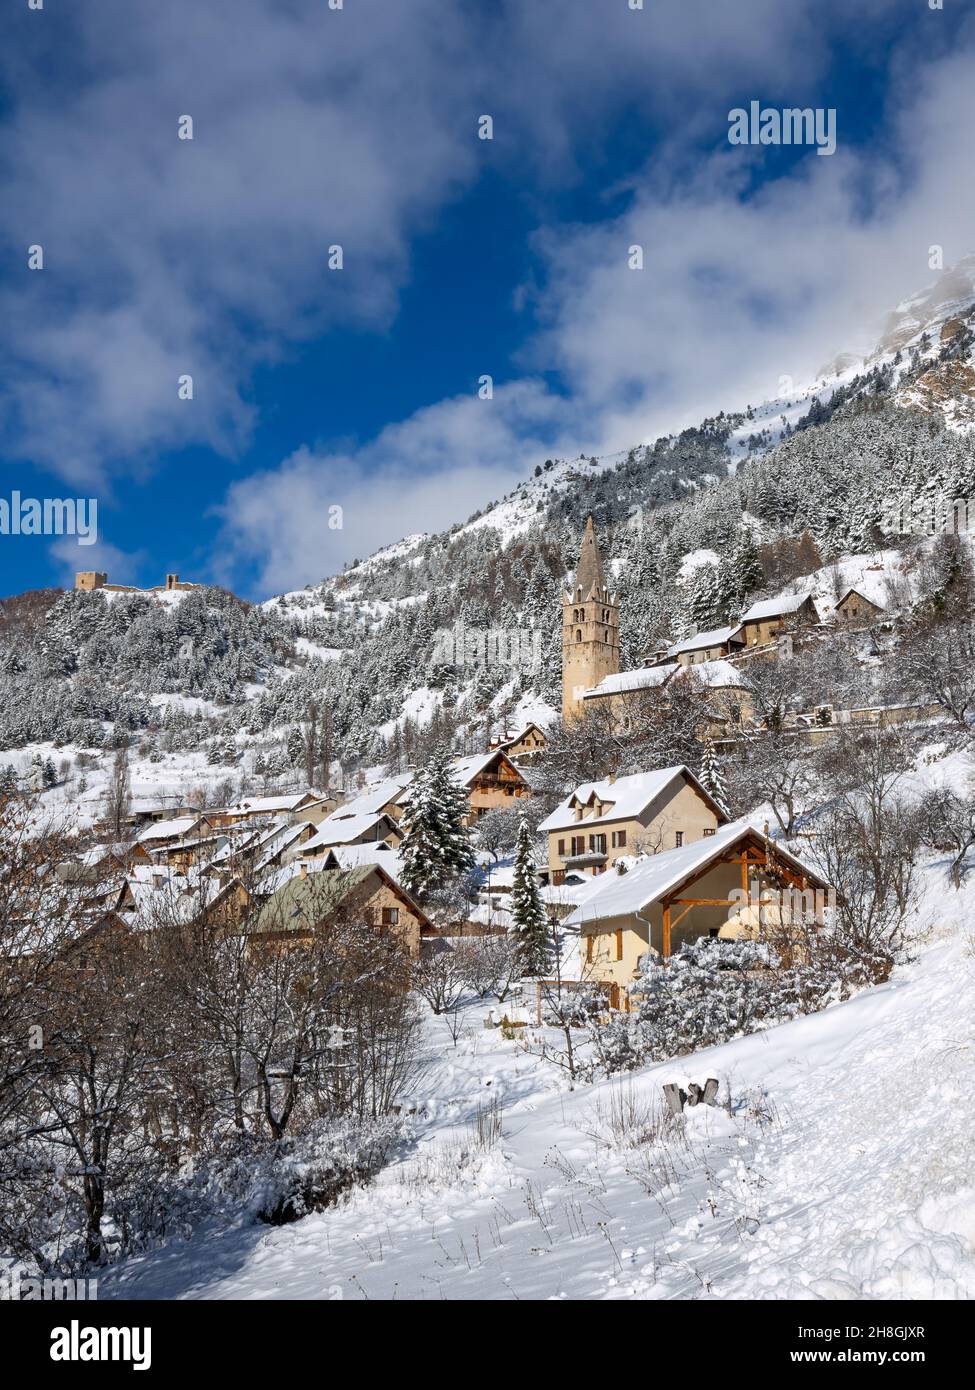 Le village de Reallon dans le parc national des Ecrins en hiver.Station de ski dans les Hautes-Alpes (Alpes françaises).France Banque D'Images